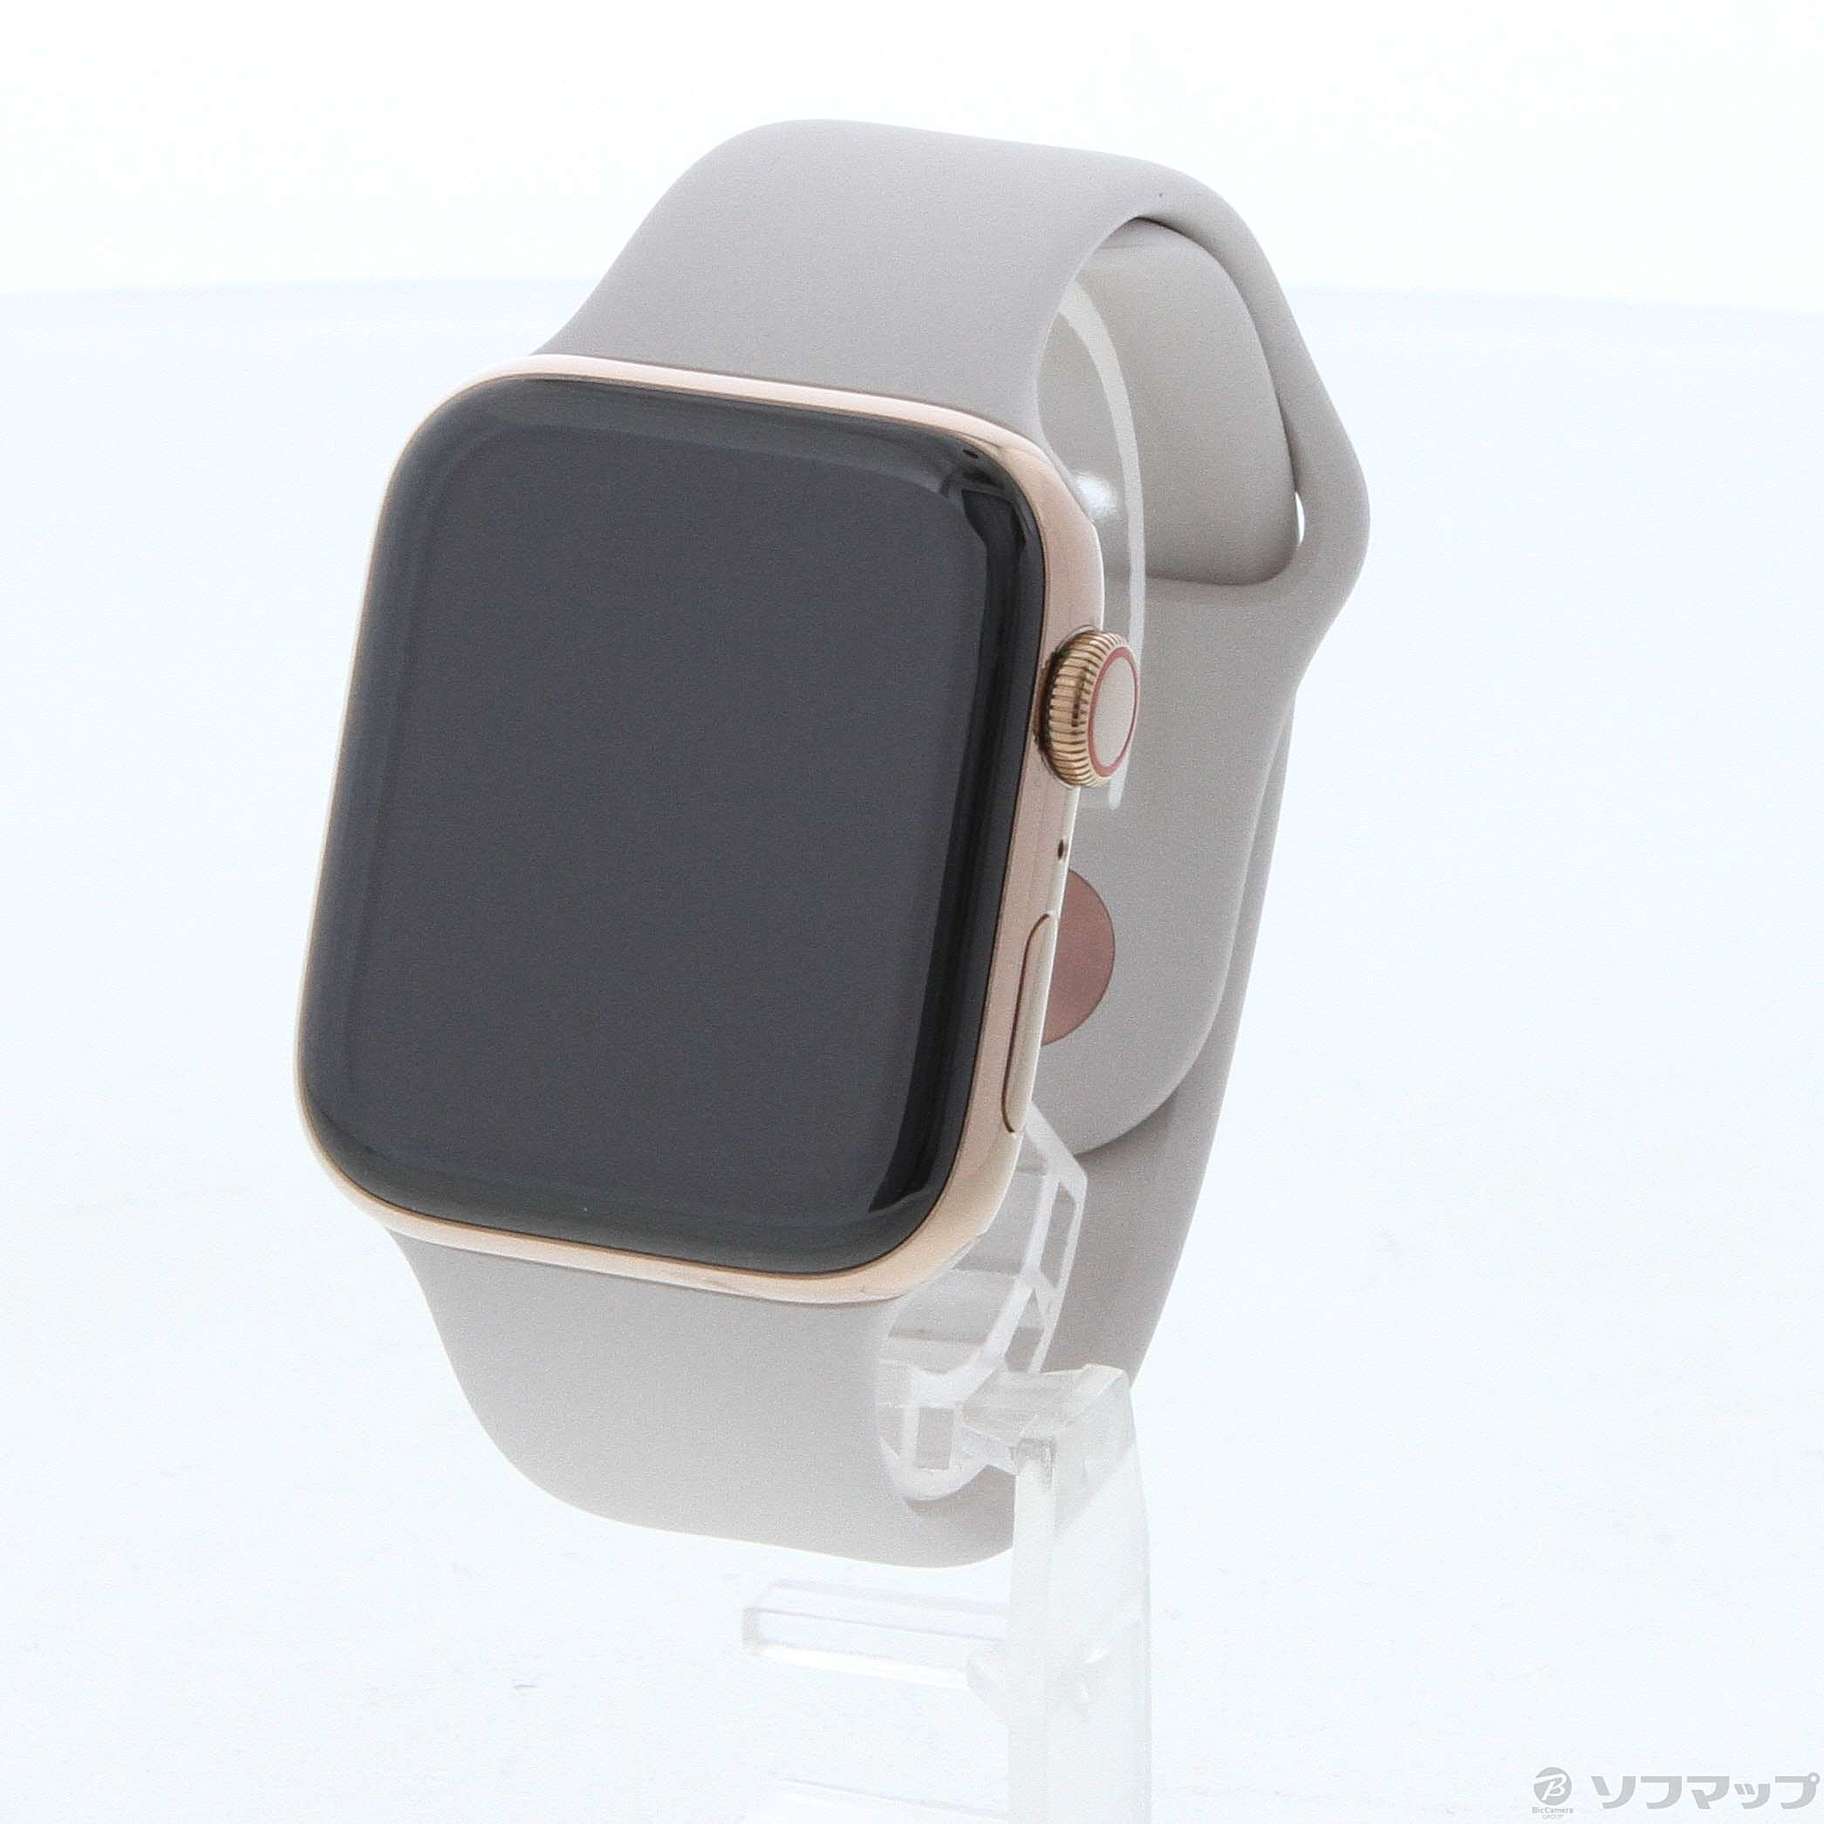 【お値下げ】Apple Watch 4 GPS + Cellular 44mm